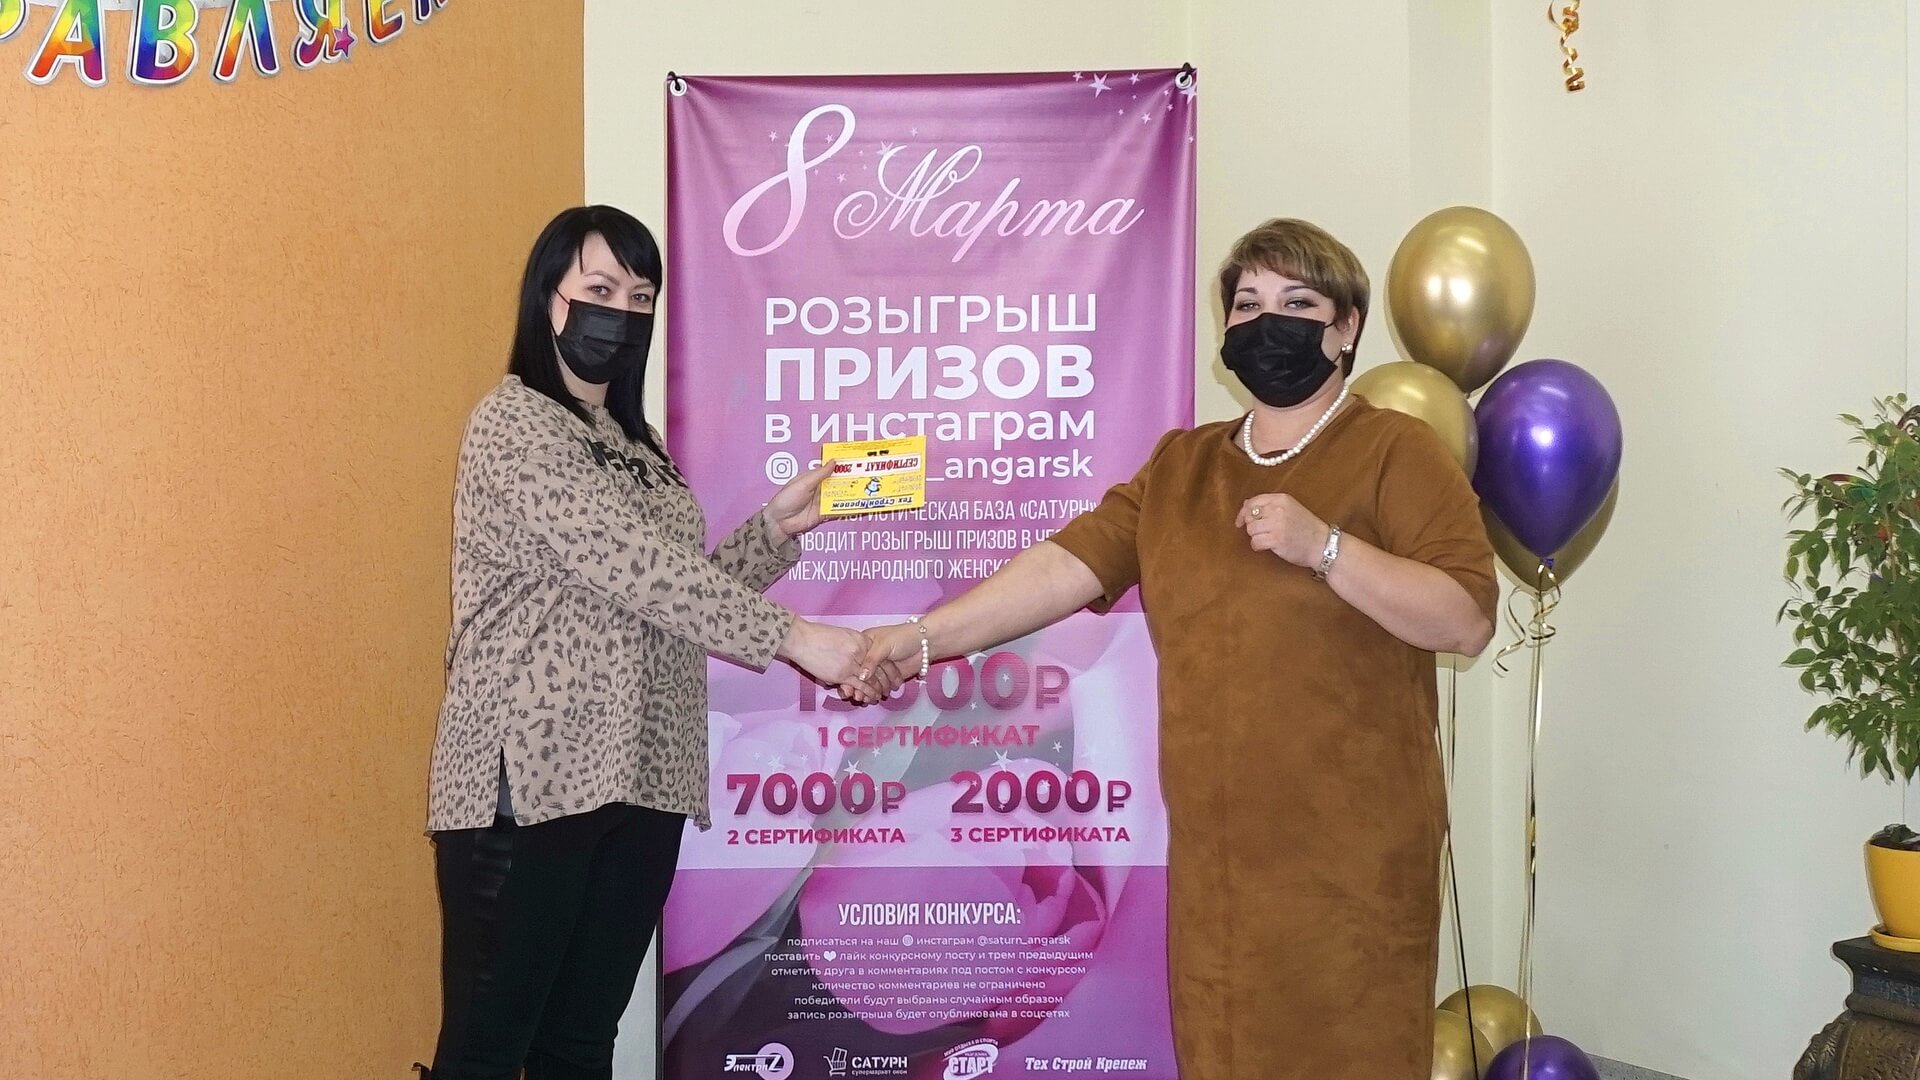 Вручение сертификата на 2000 рублей от магазина Техстройкрепеж победительнице, занявшей 3 место в розыгрыше призов